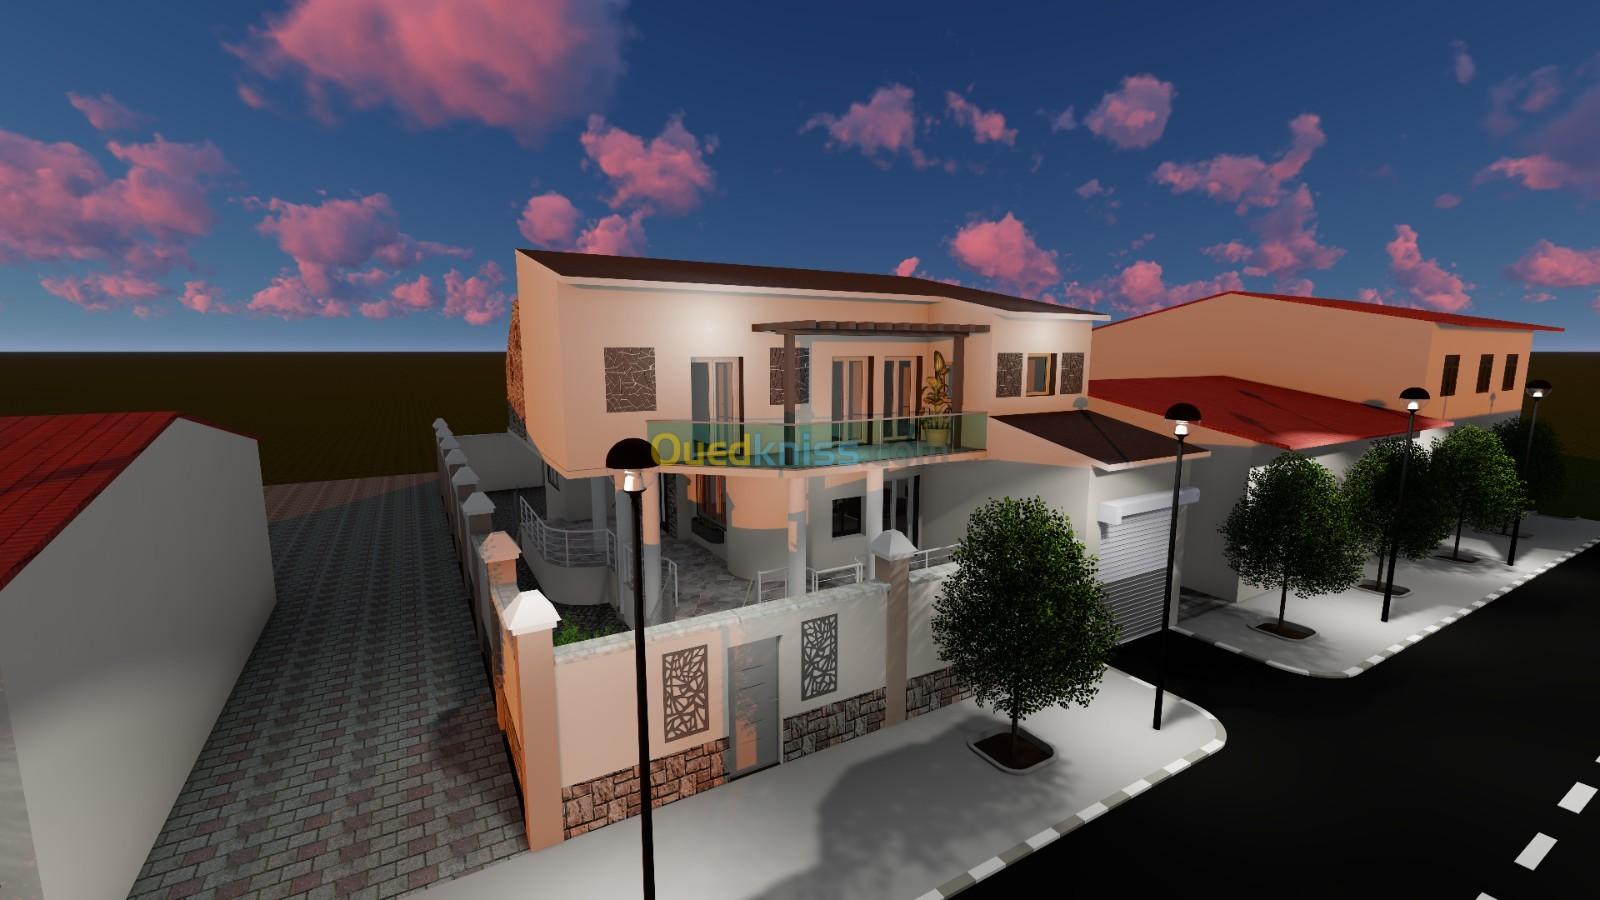 Conception et modelisation 3D des villas et maisons